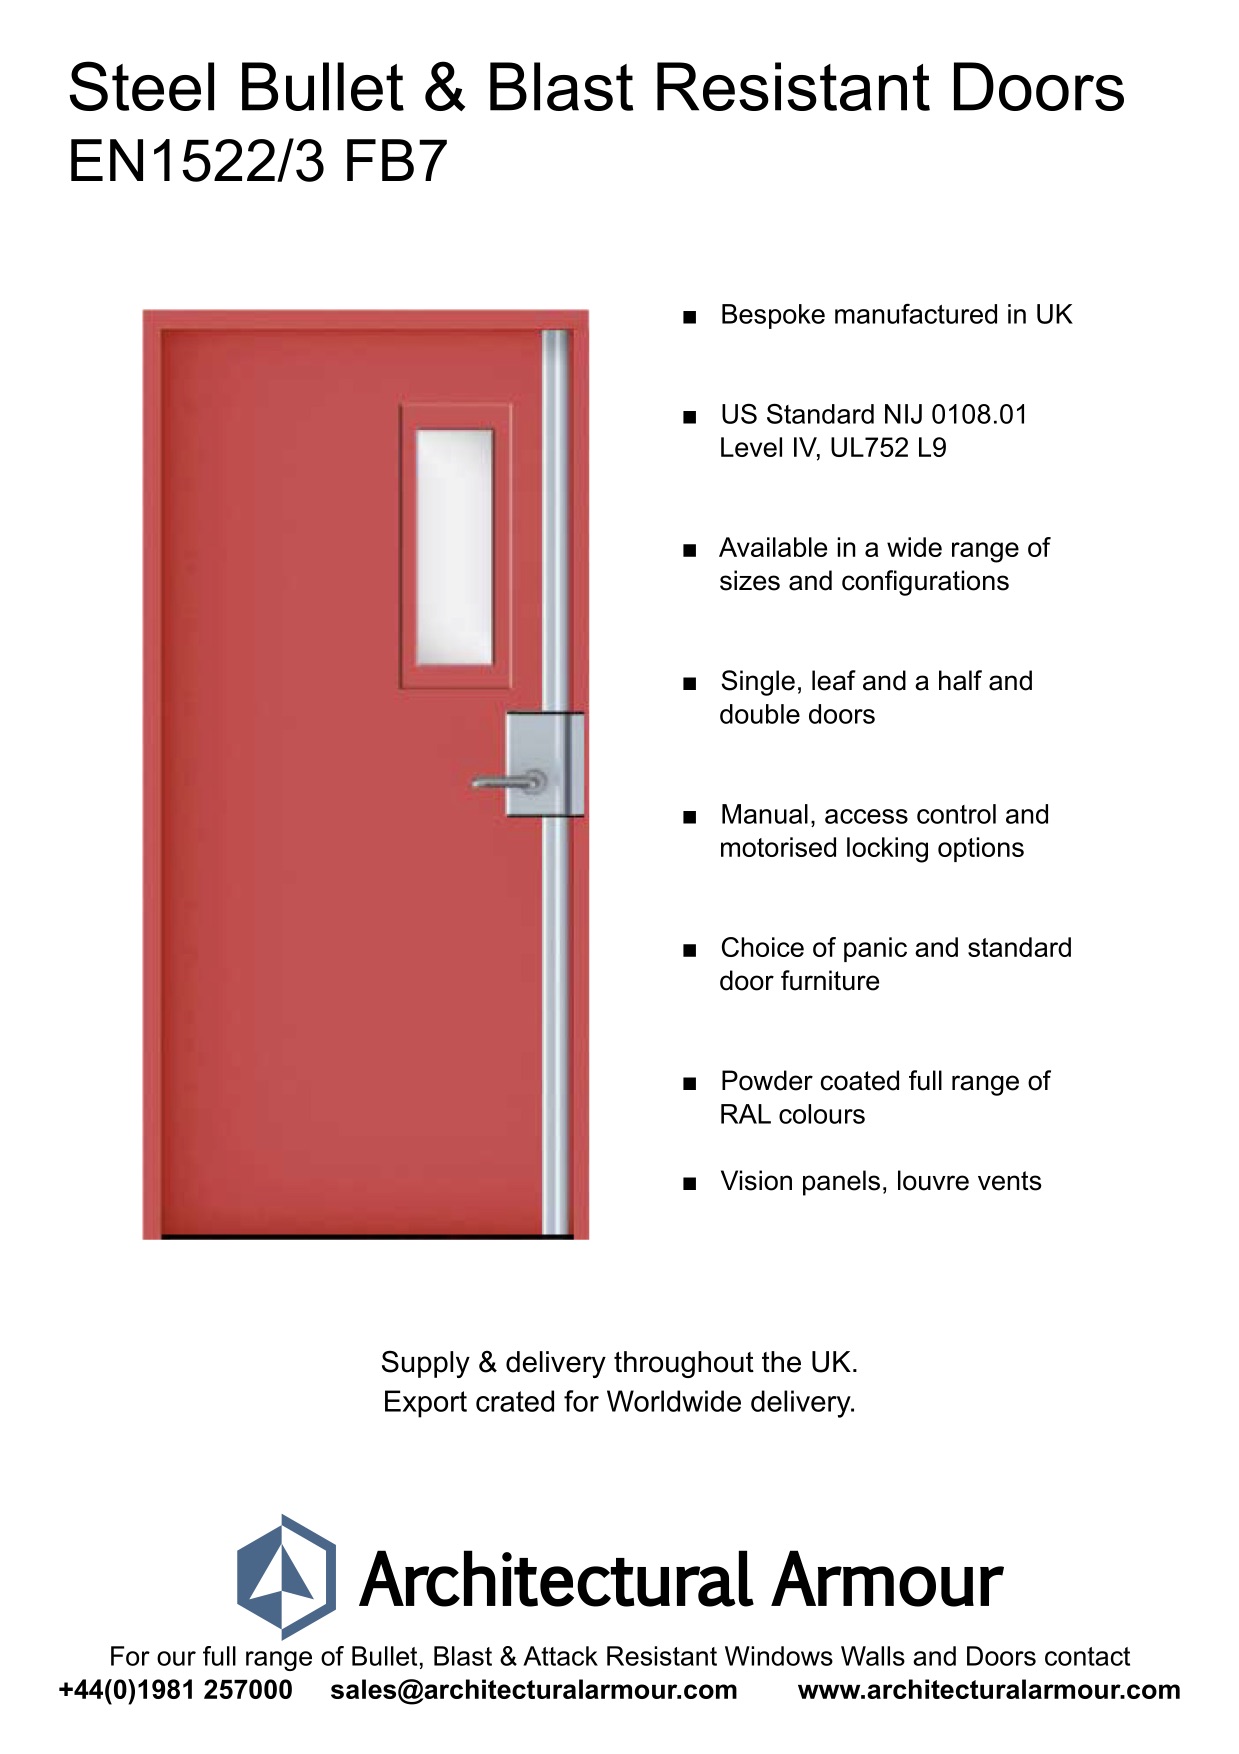 EN1522-3-FB7-Single-Slim-Vision-Panel-Blast-and-Bullet-Resistant-Steel-Door